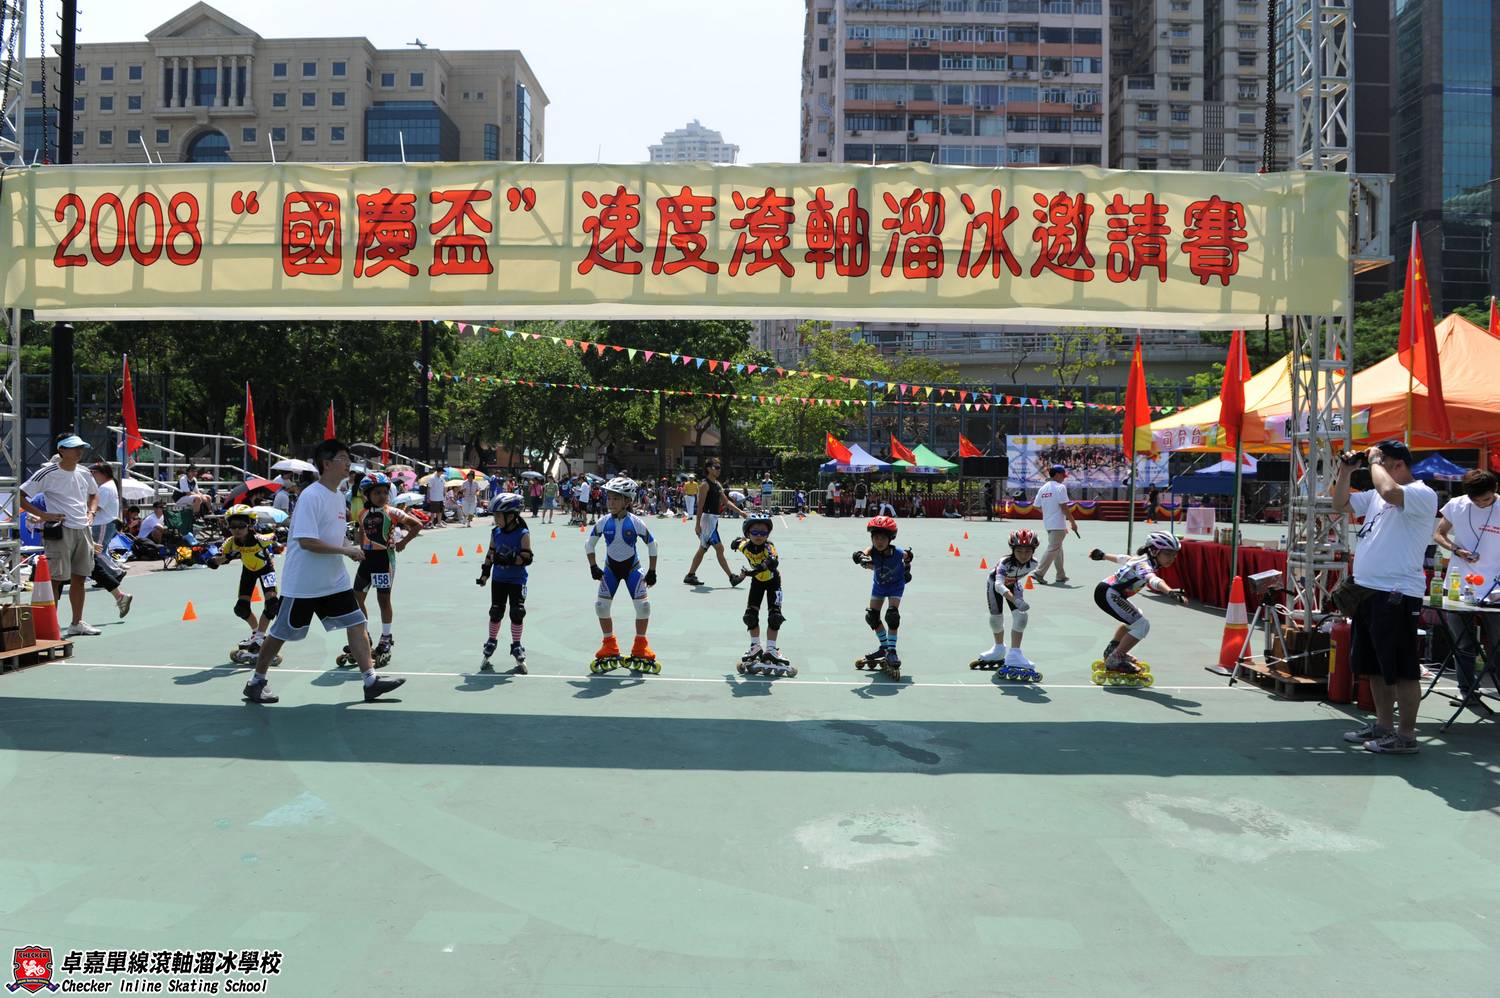 2008-09-28 國慶盃速度滾軸溜冰邀請賽